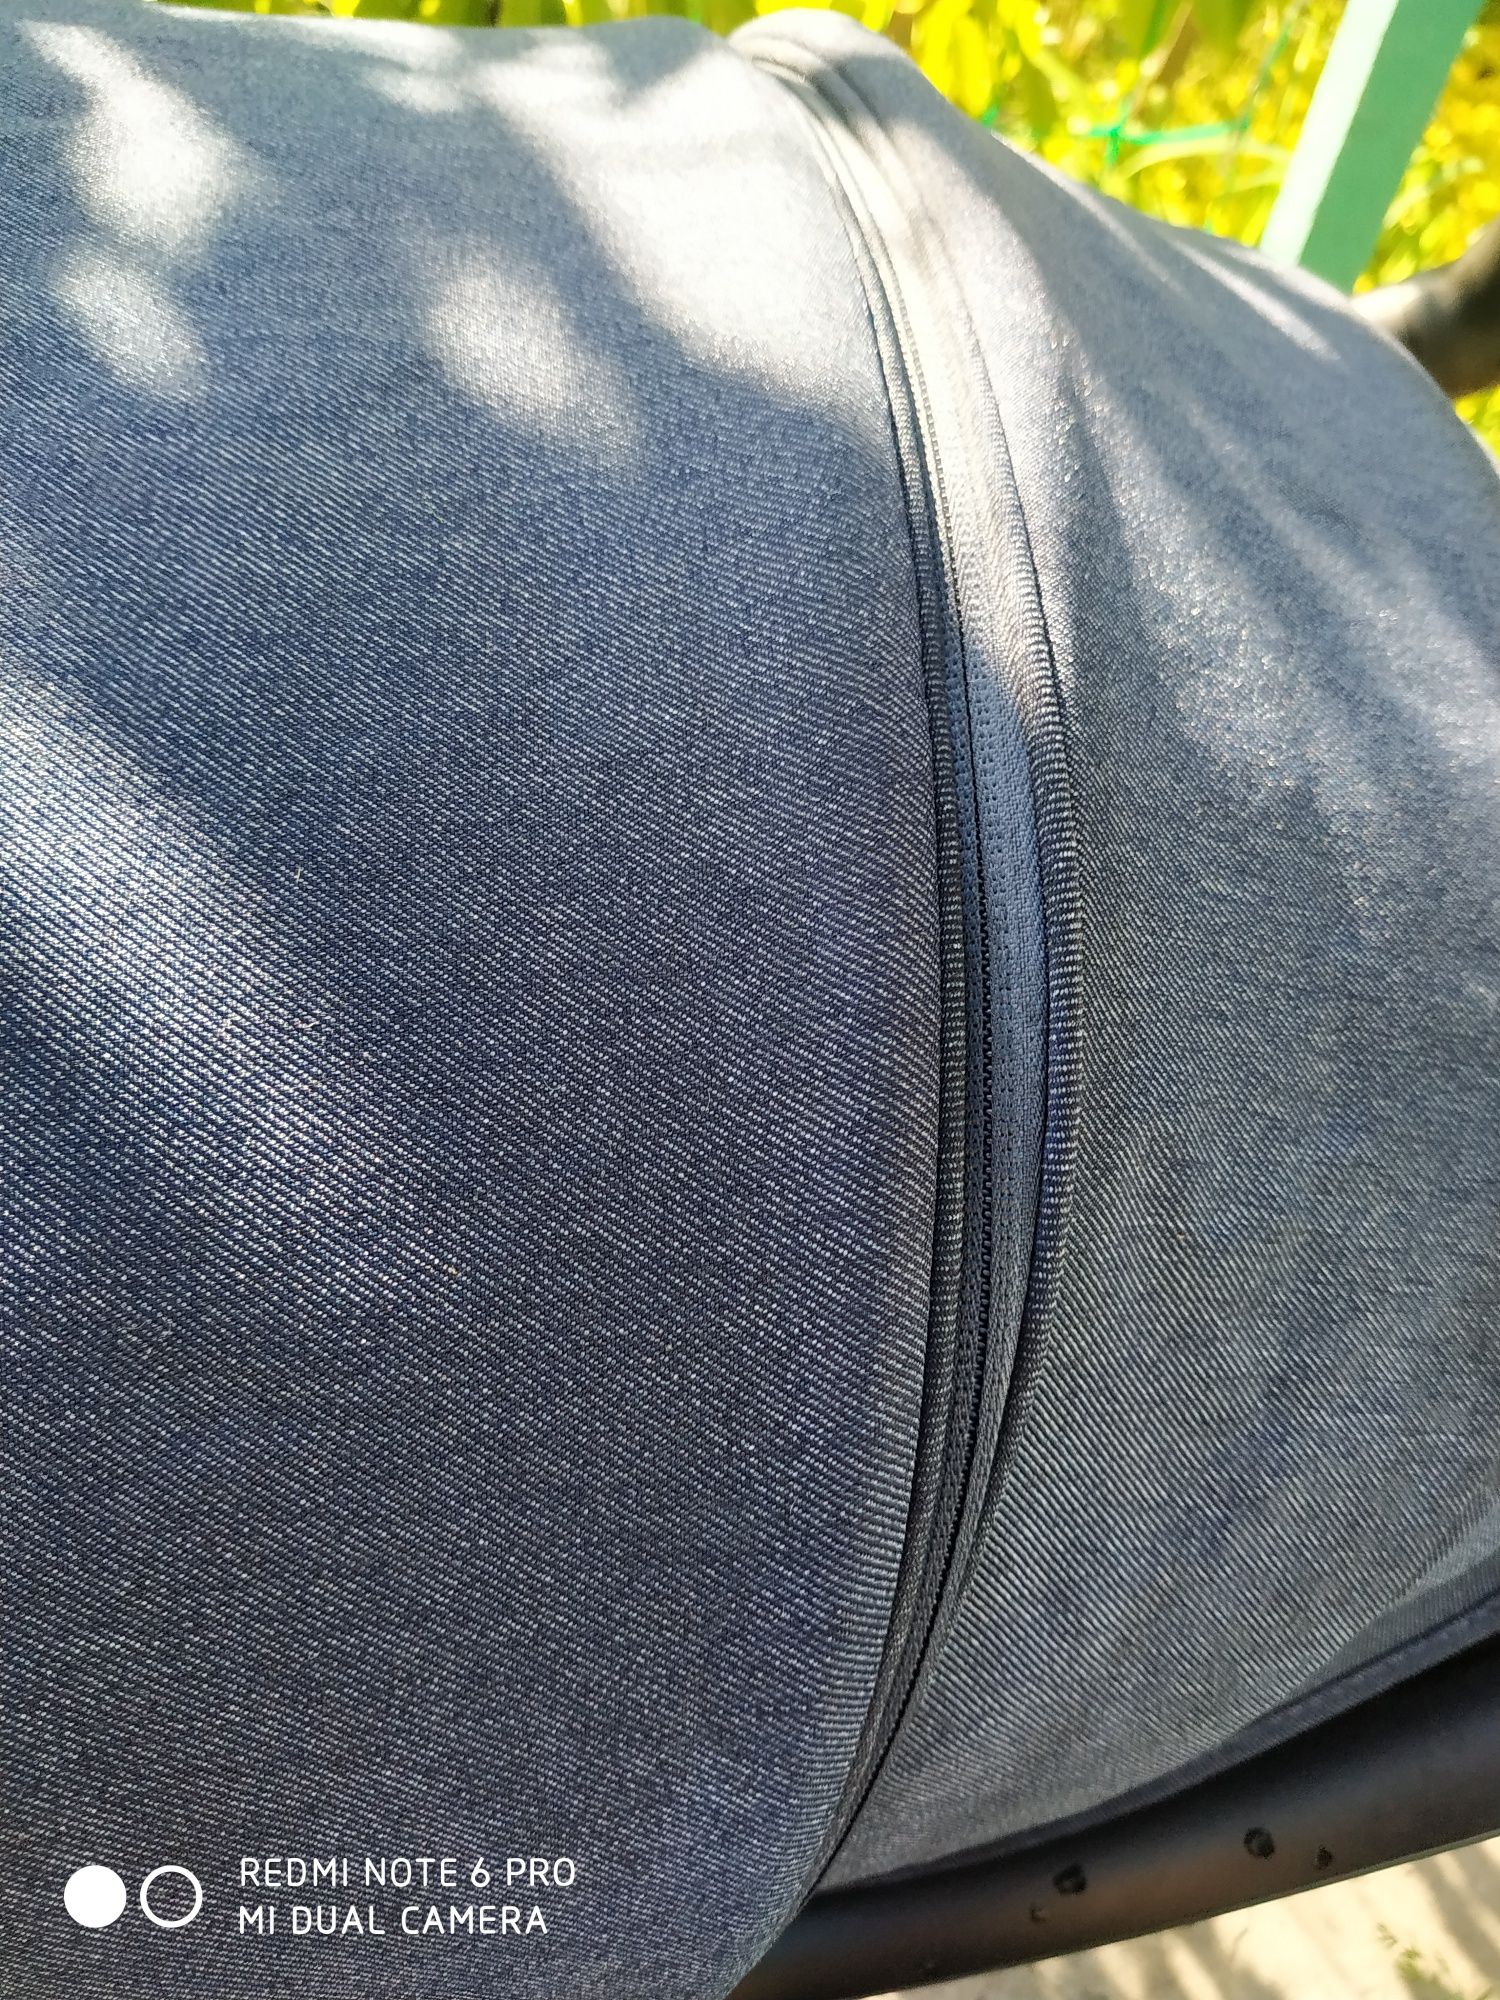 Прогулочная складная детская коляска Сaretero, синего цвета, под джинс